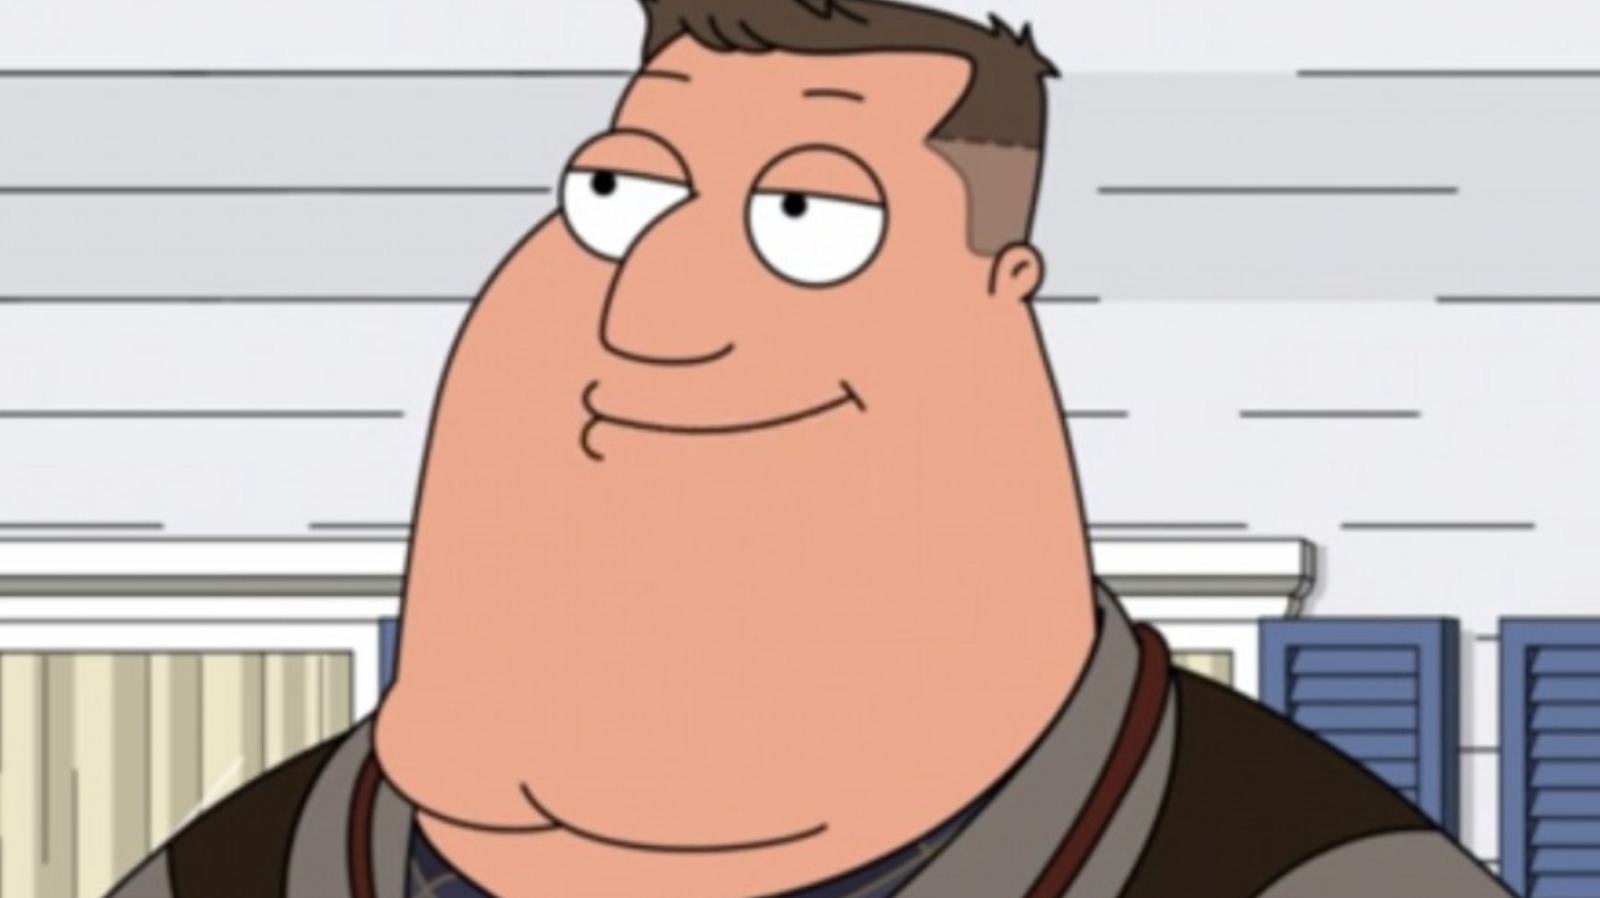 Family Guy (season 21) - Wikipedia